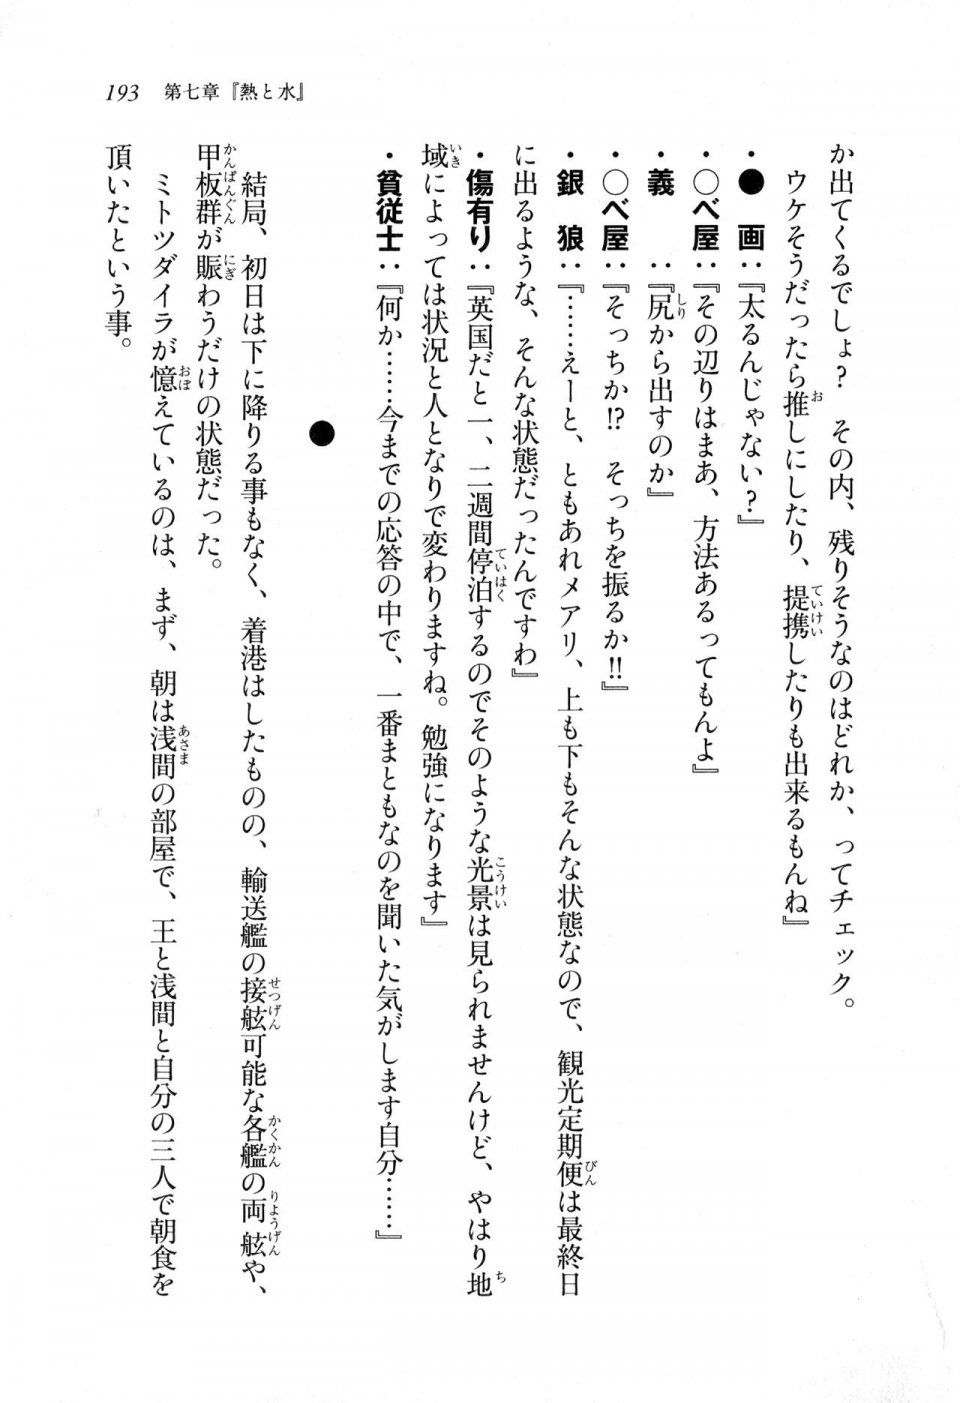 Kyoukai Senjou no Horizon LN Sidestory Vol 1 - Photo #191